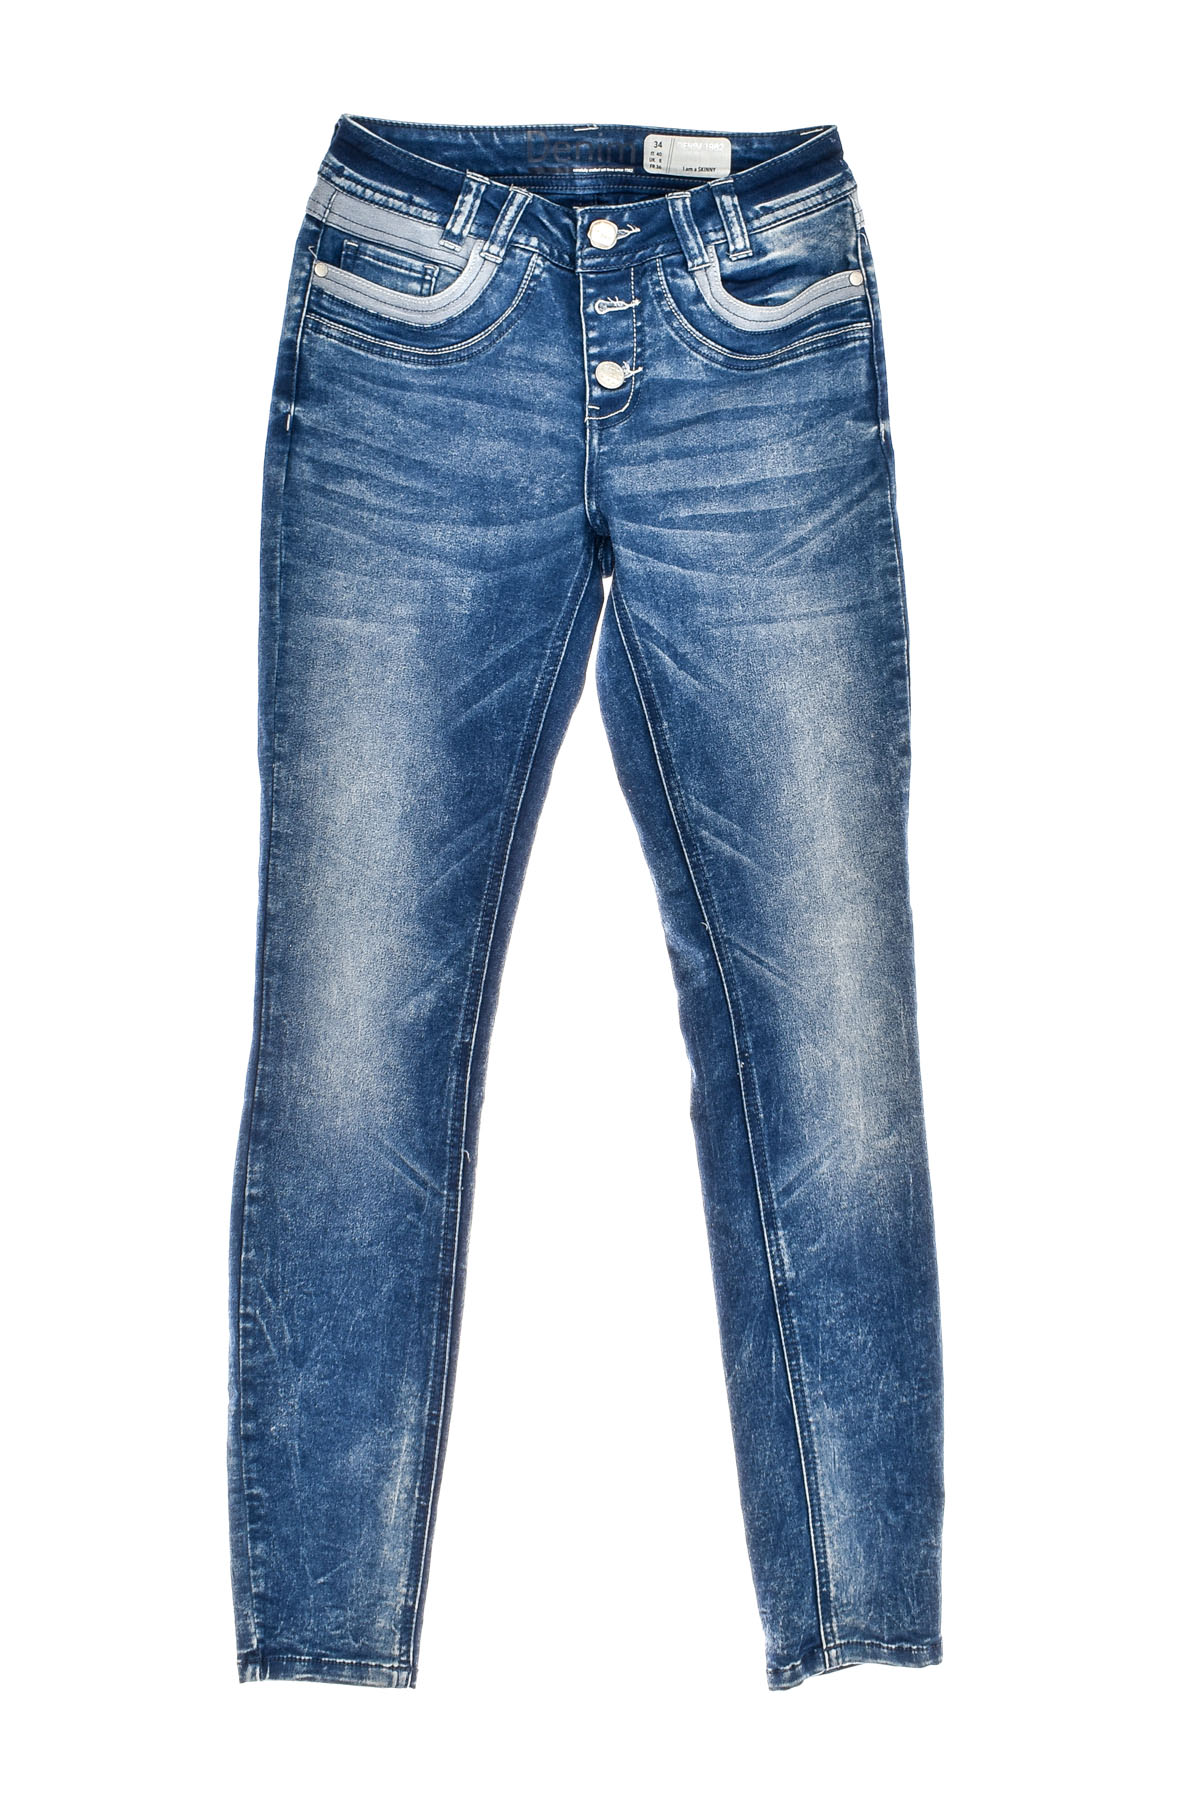 Women's jeans - DENIM 1982 - 0